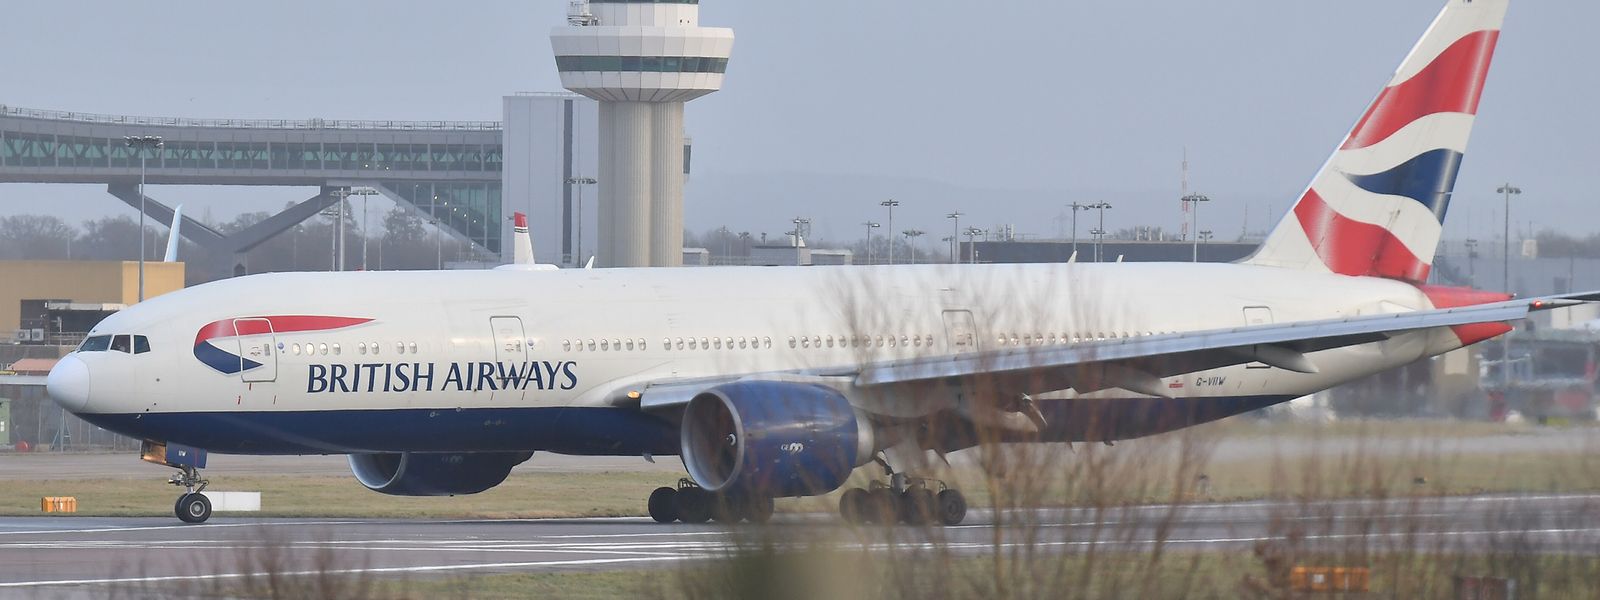 Ein Flugzeug von British Airways landet auf dem Flughafen Gatwick. Der seit Tagen wegen umherfliegender Drohnen behinderte Flugverkehr des Londoner Airports Gatwick soll am Samstag wieder zum Normalbetrieb zurückkehren.